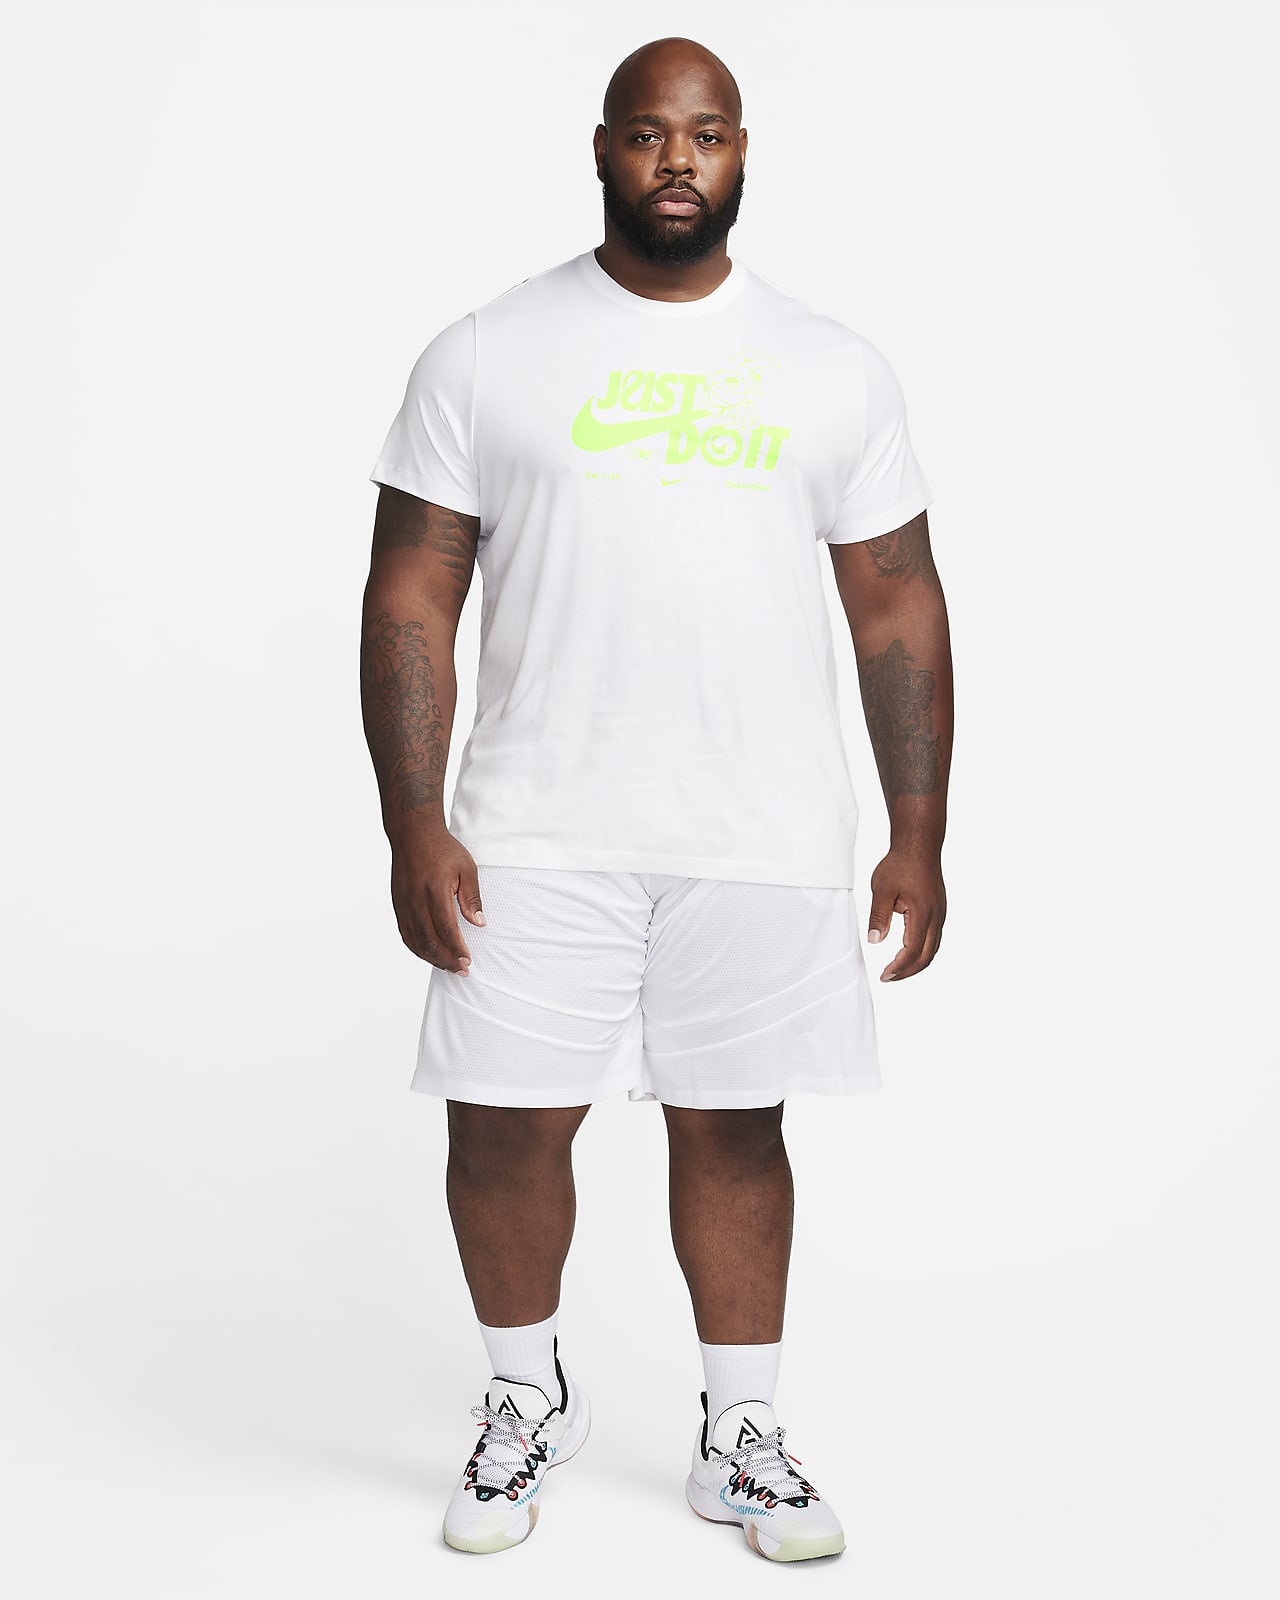 T-shirt Homme Nike Solid Swoosh Été